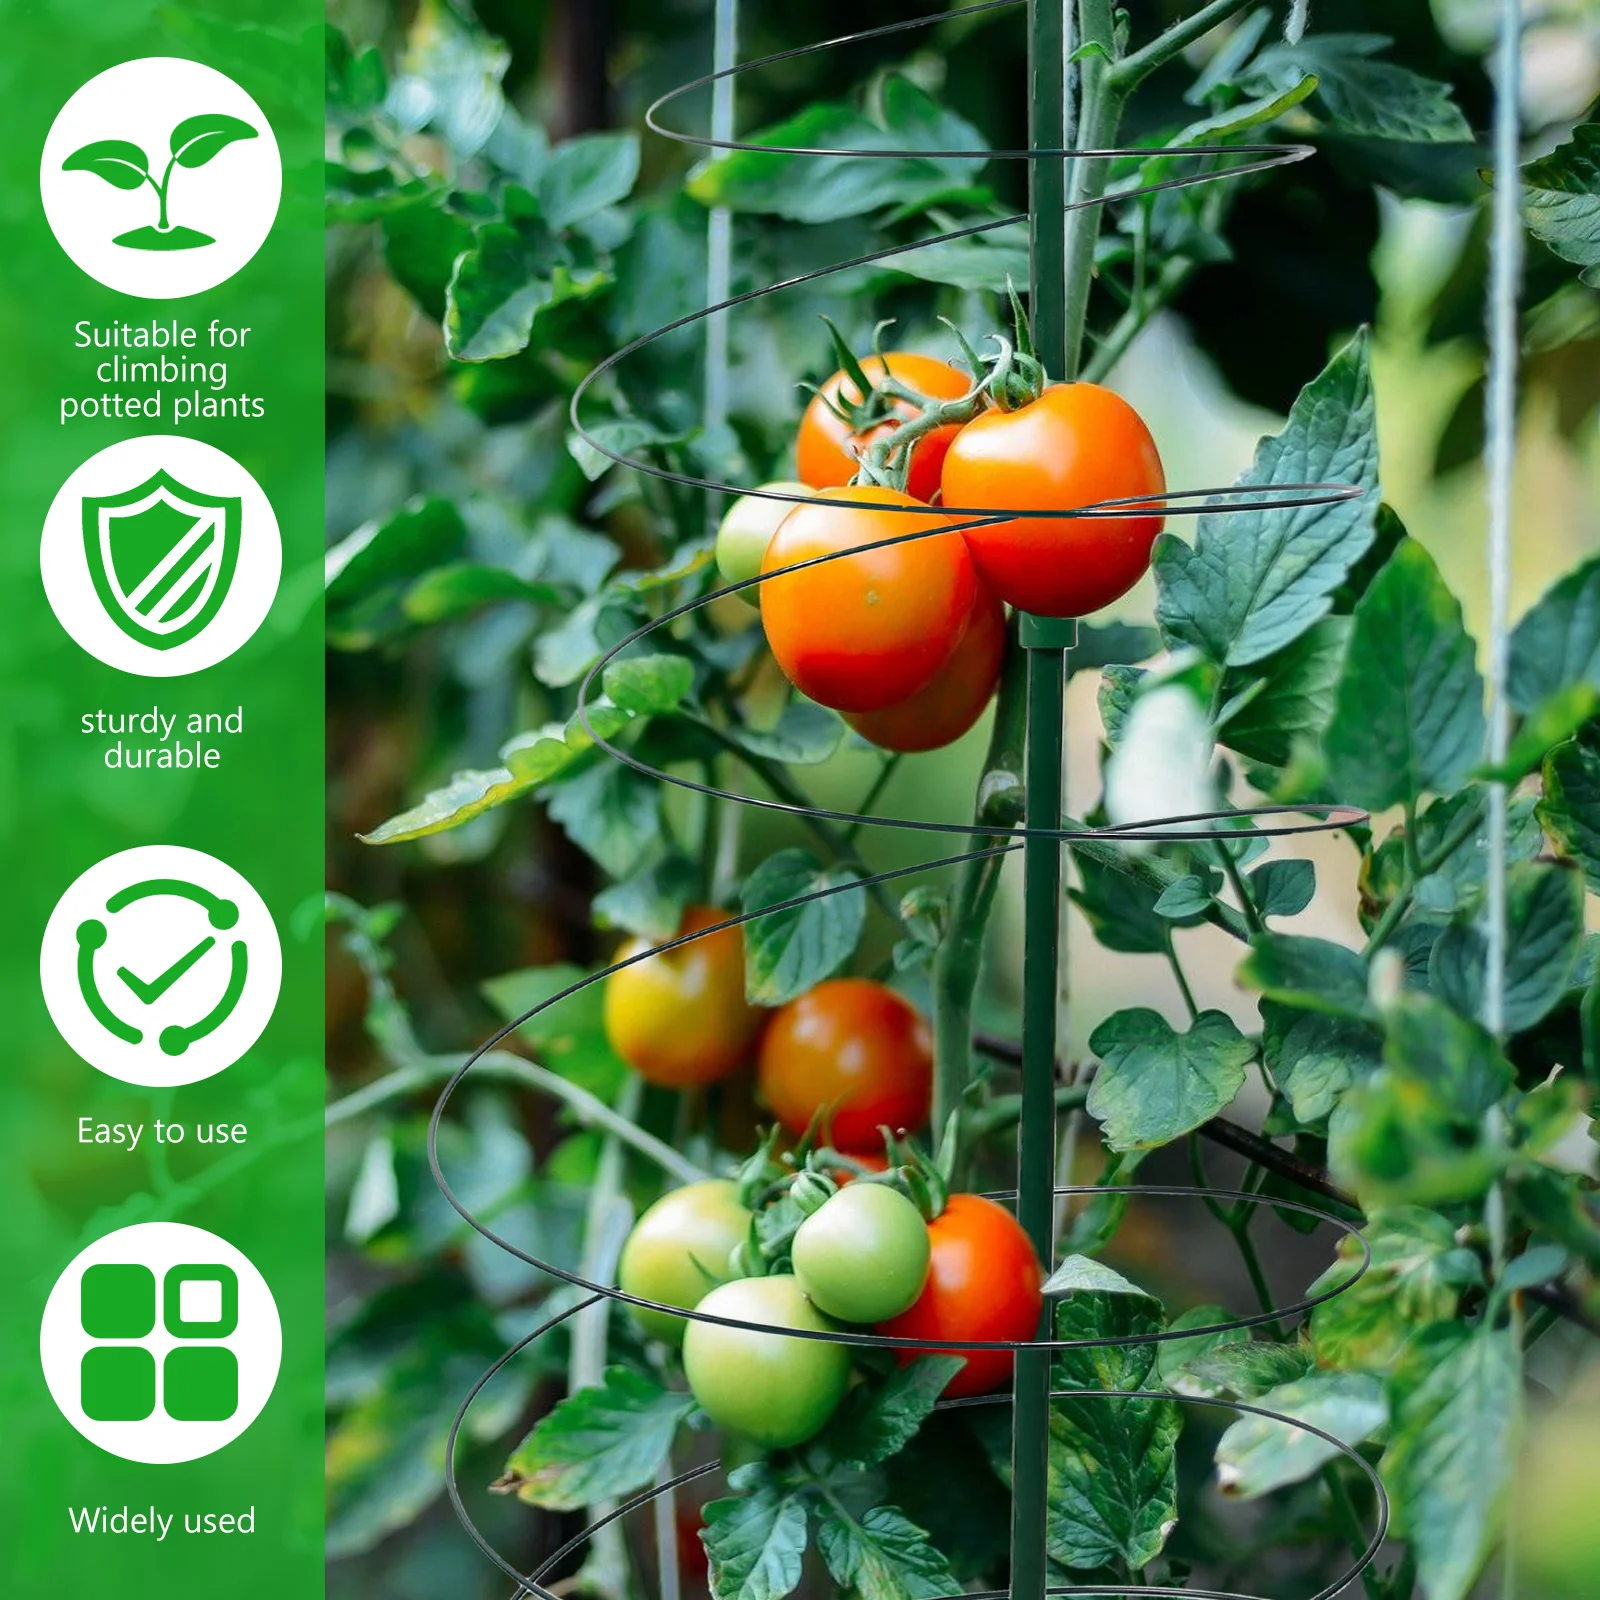 ספירלת תמיכה הצמח מתיחה ירקות לתמוך יתדות אל-חלד עגבניות לגדול תמיכה הכלוב הטבעת להארכה צמחים מטפסים